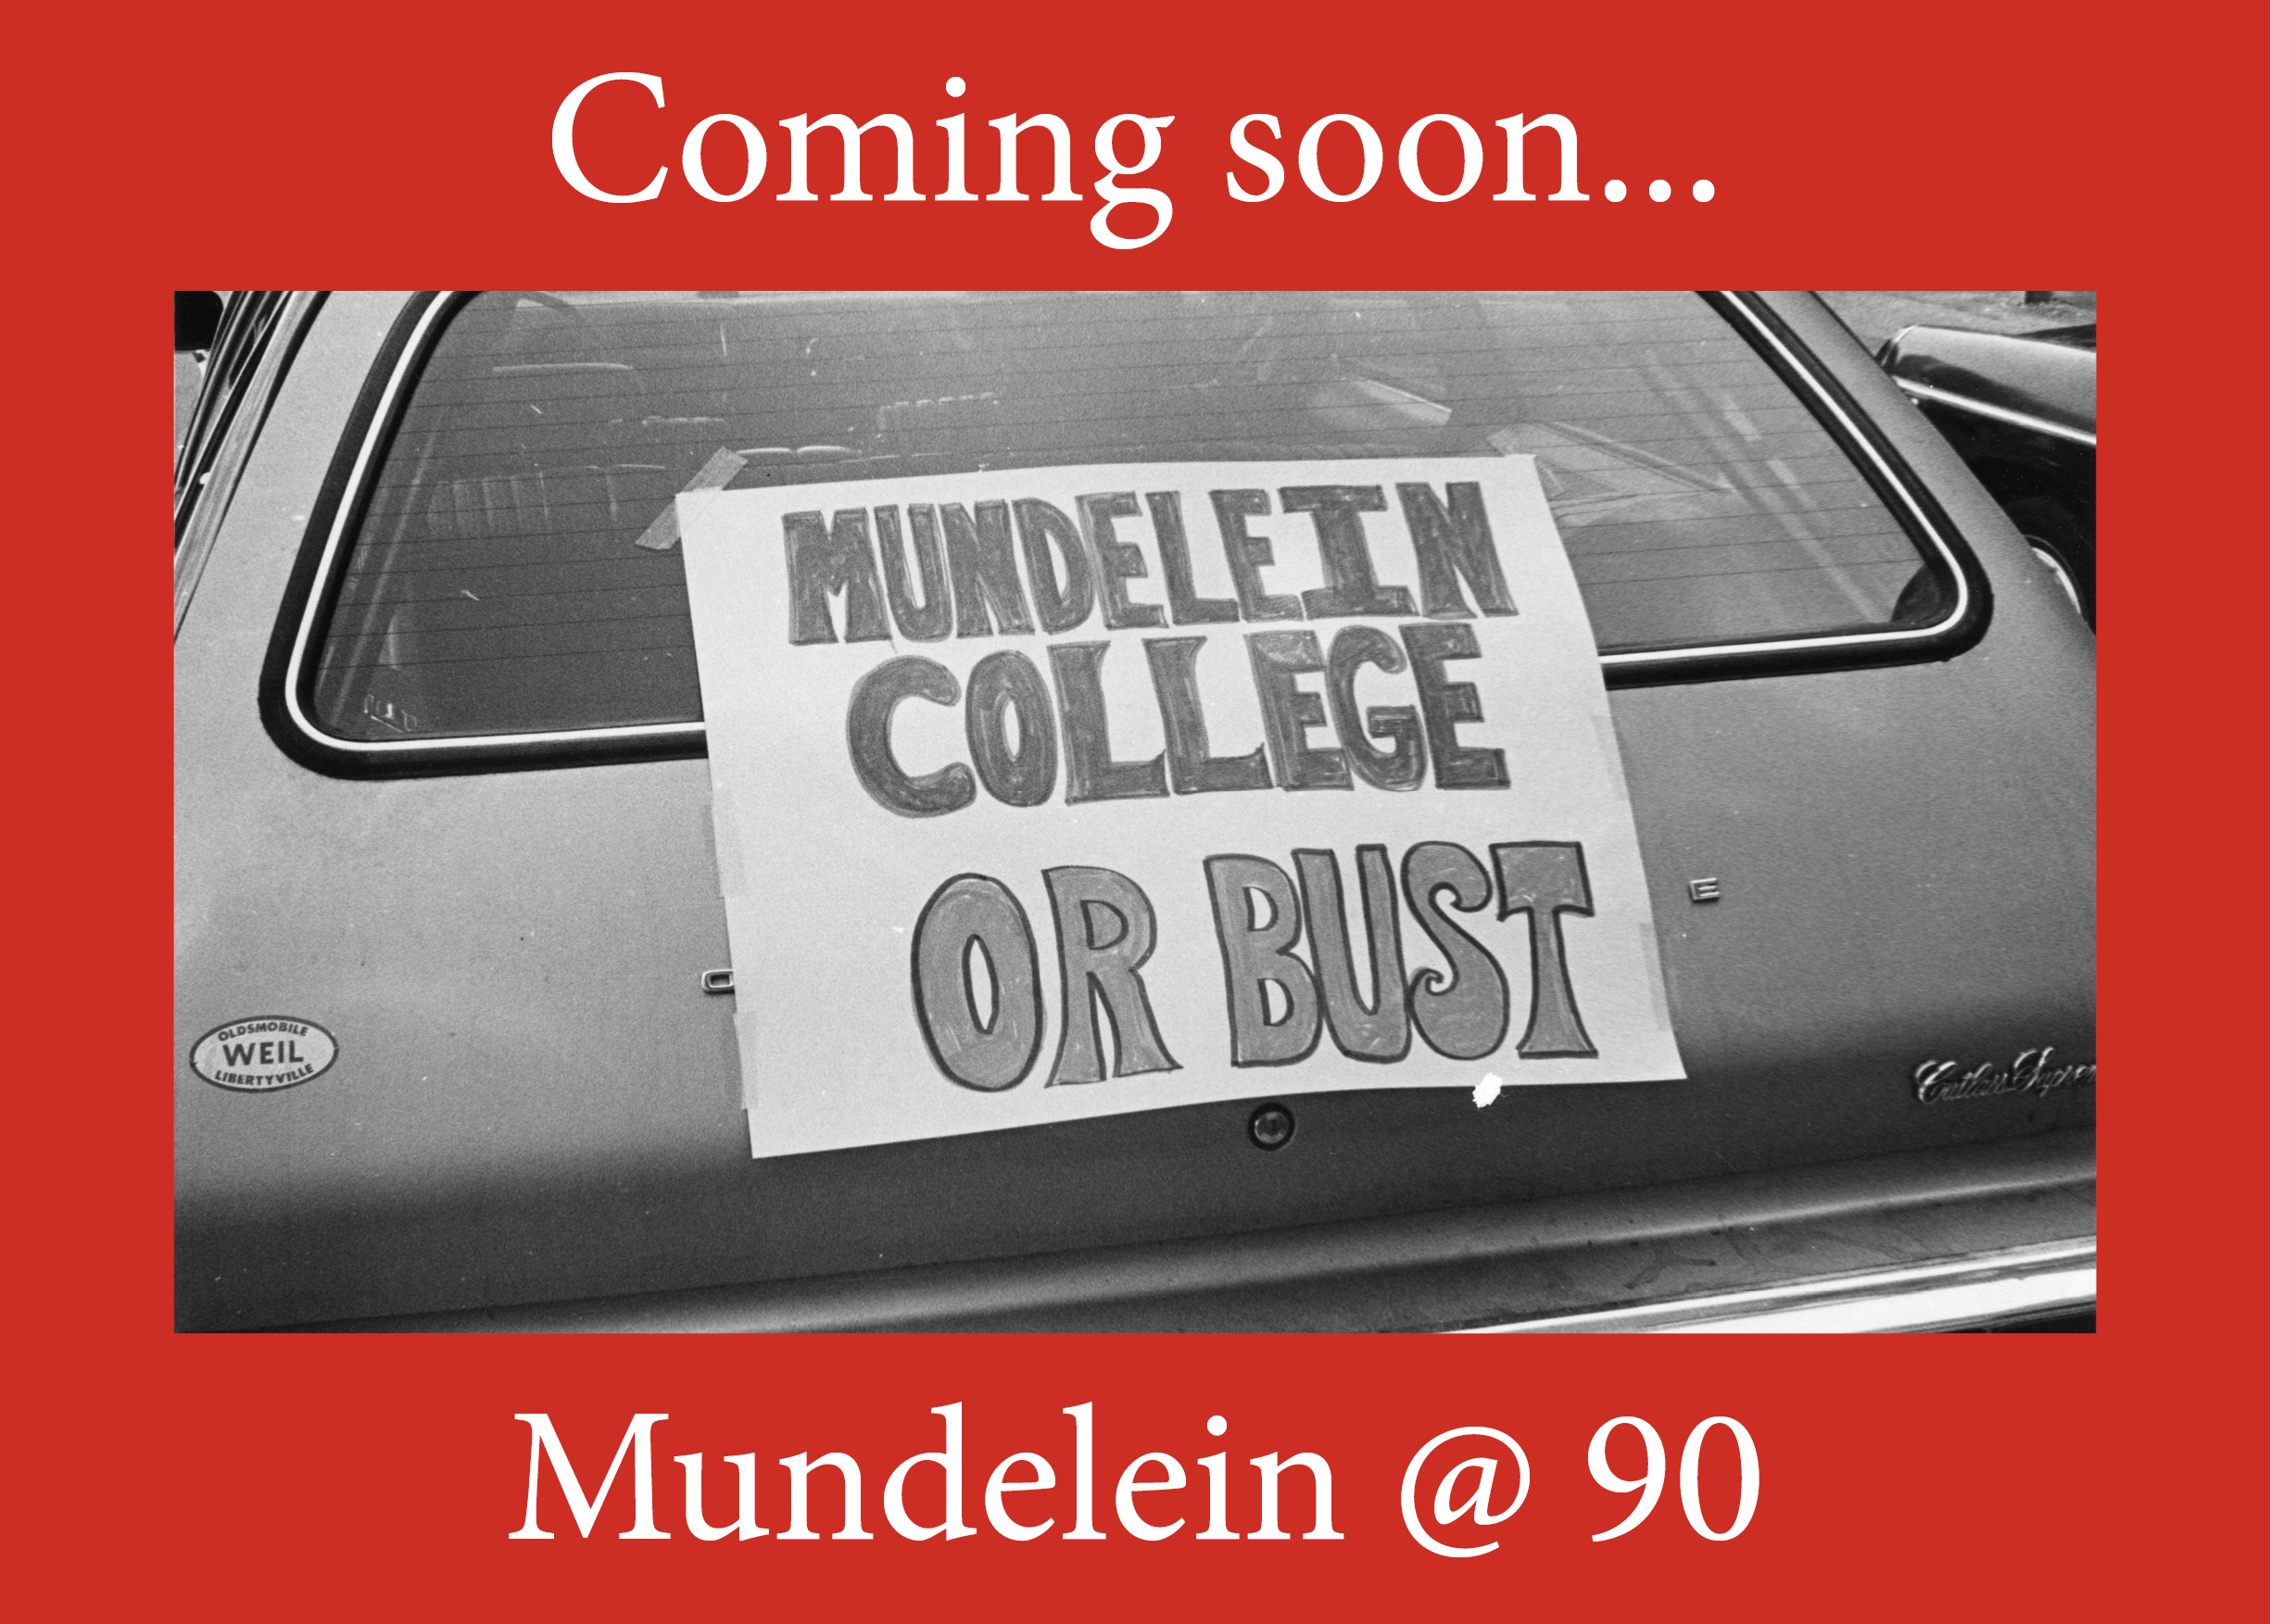 Mundelein at 90 image